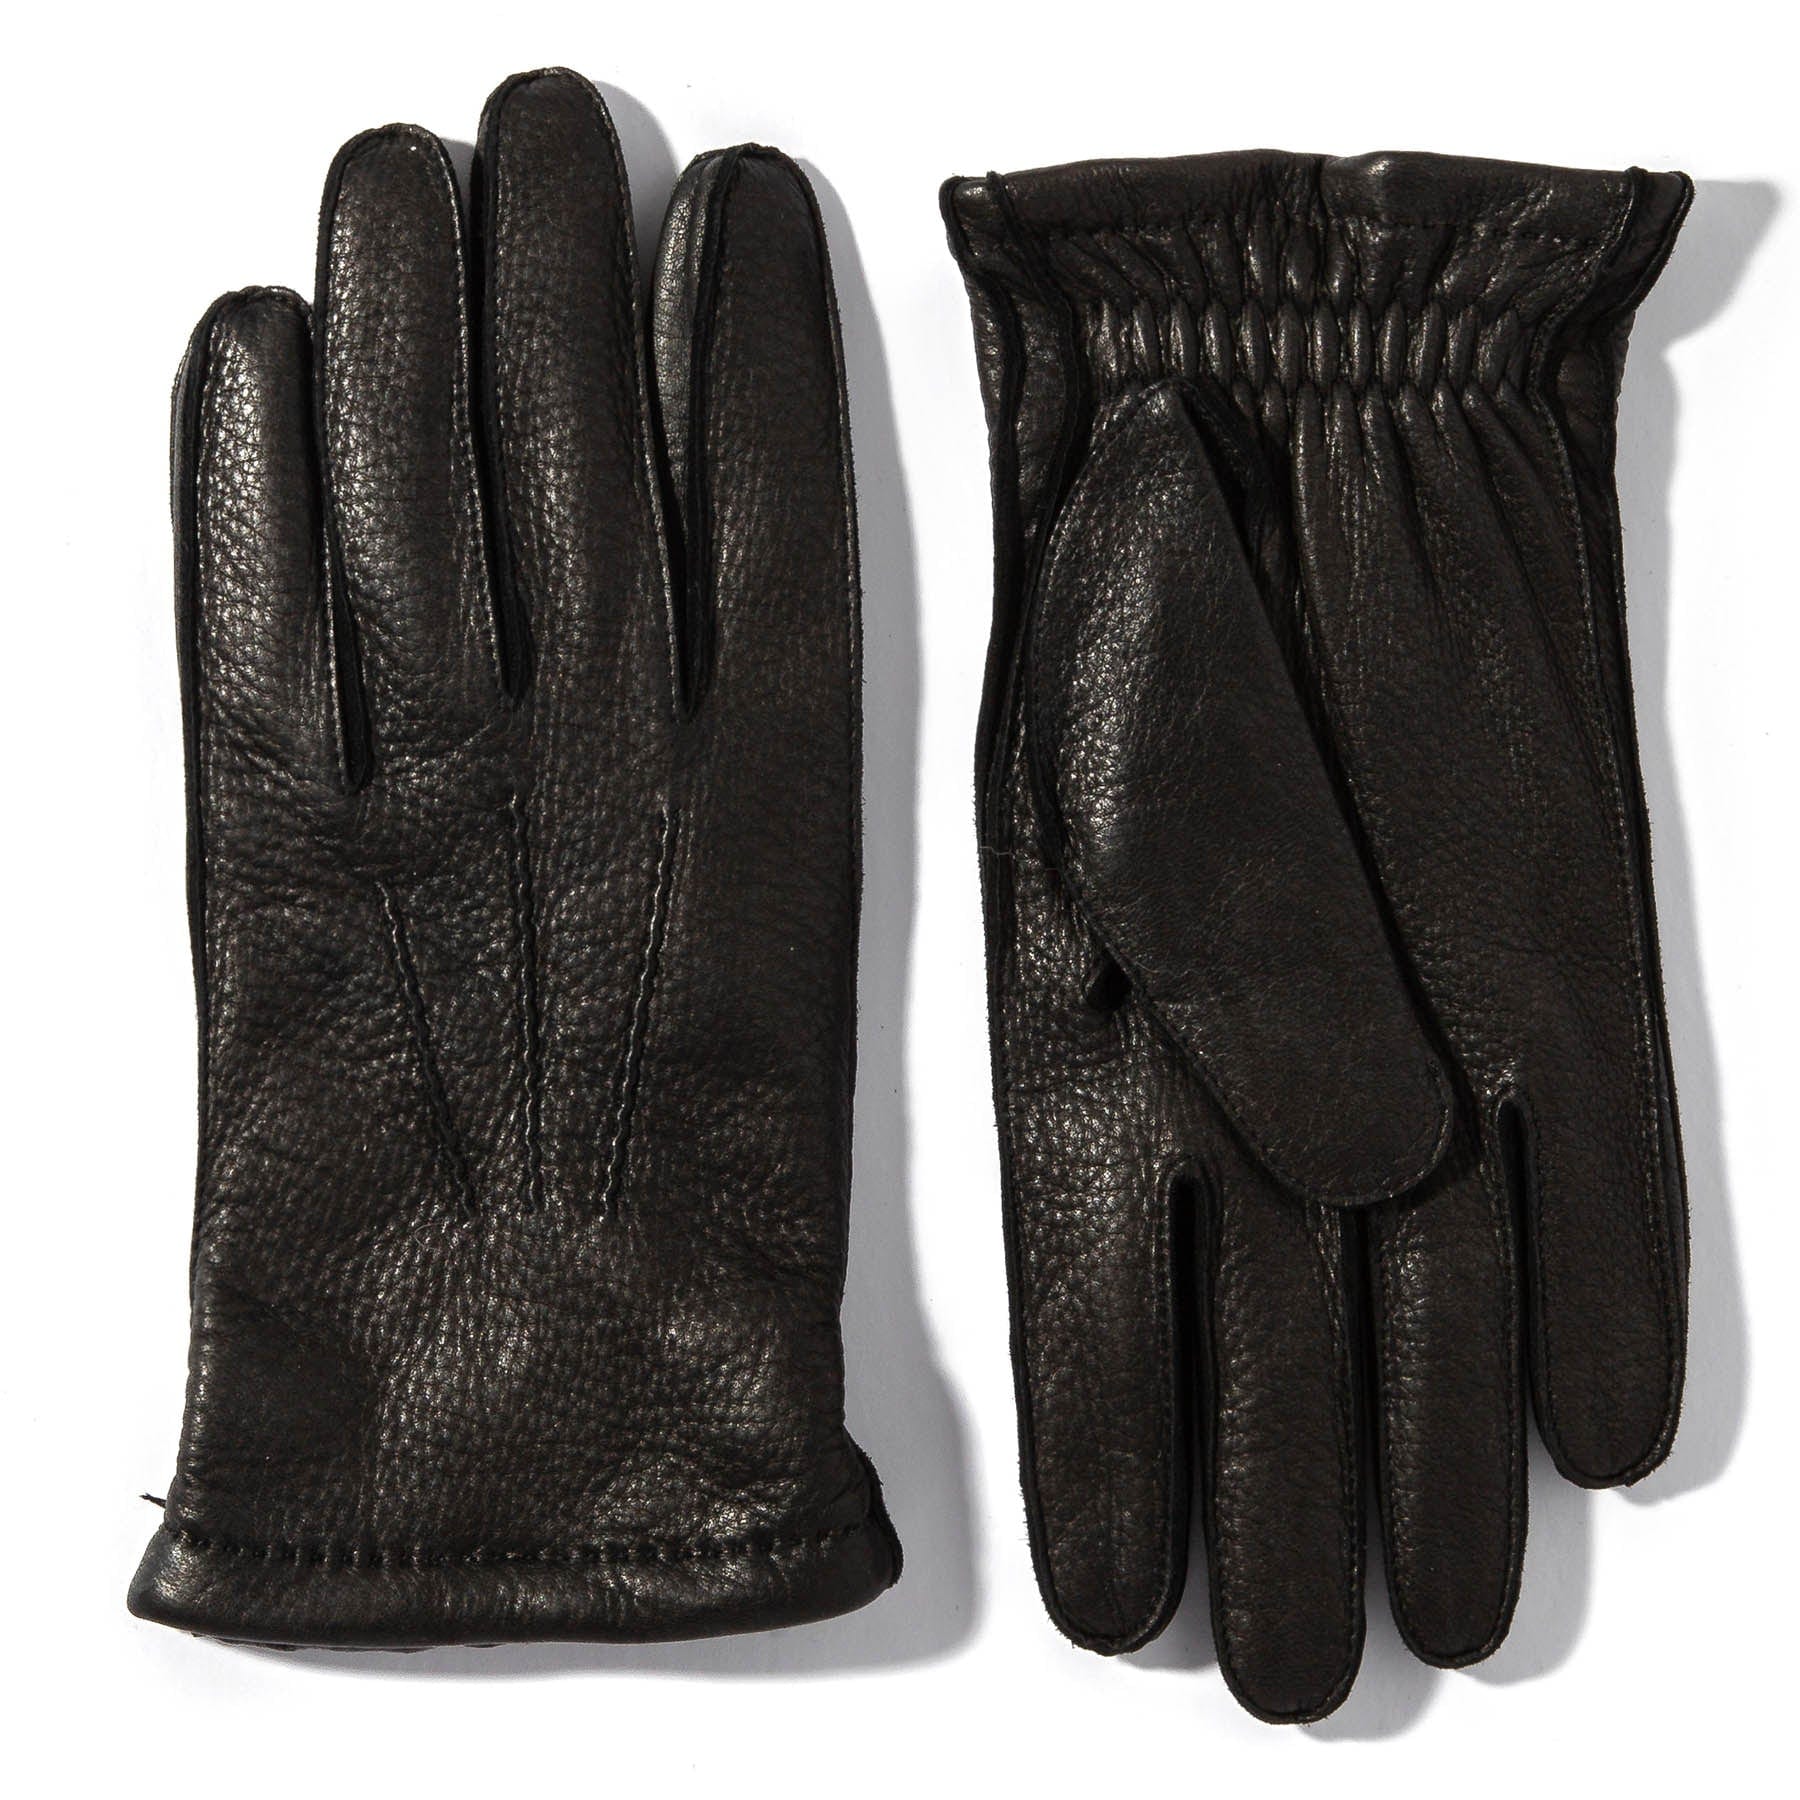 Bozeman Deerskin Gloves In Black - AXEL'S